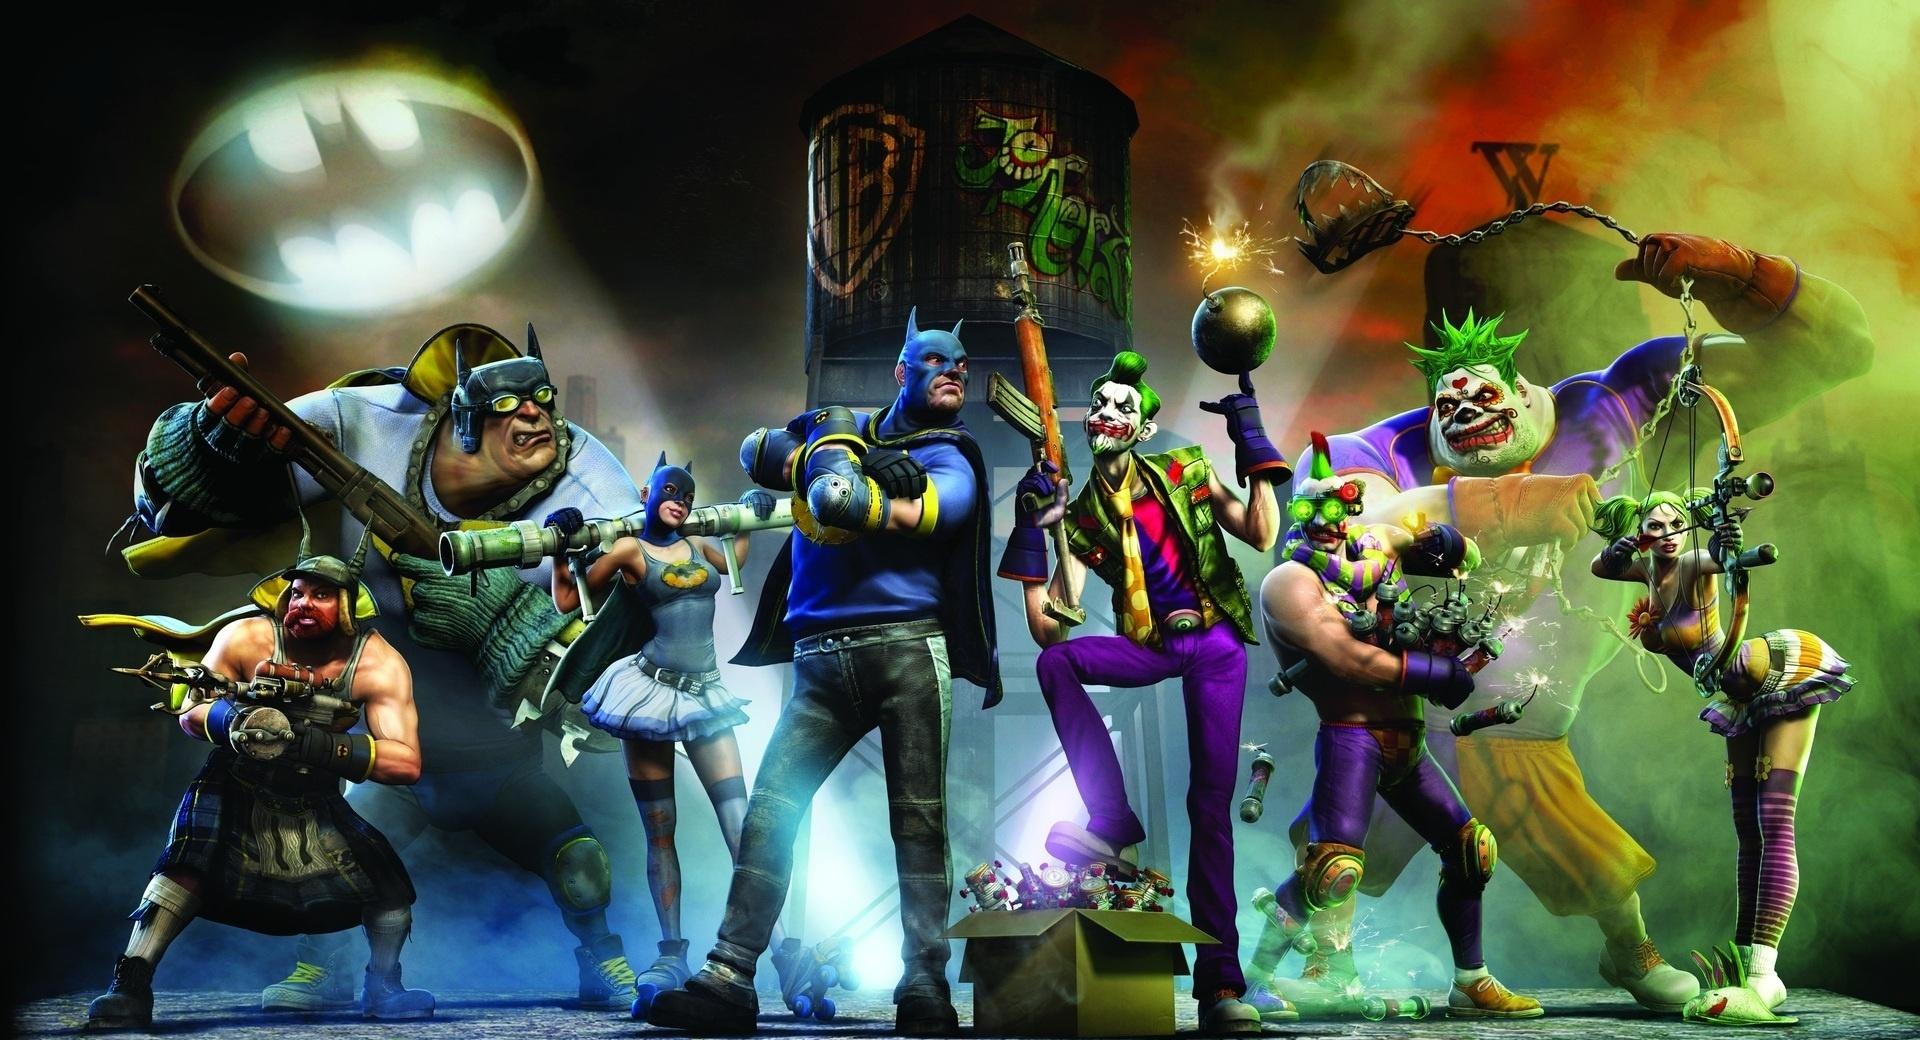 Joker Vs Batman at 1024 x 1024 iPad size wallpapers HD quality